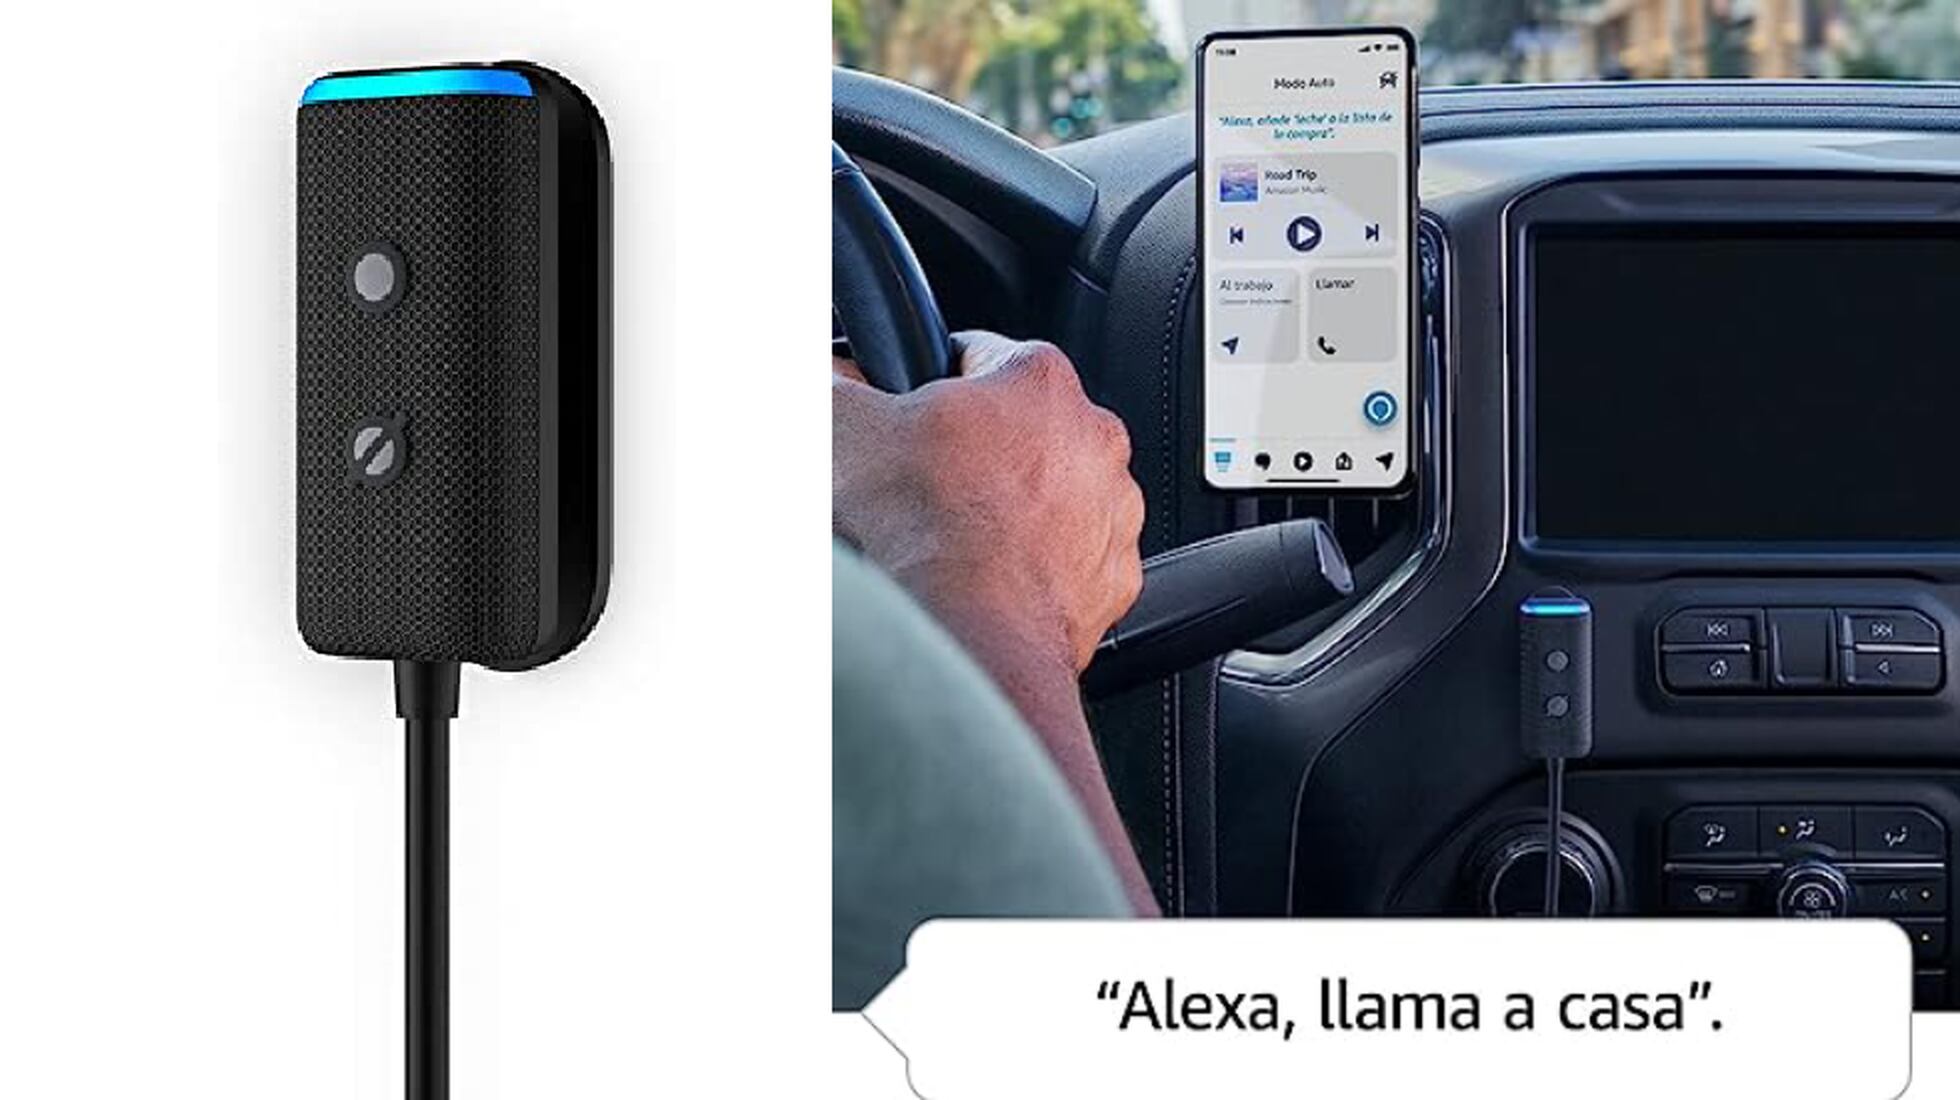 Descubre el nuevo Echo Auto para llevar Alexa en el coche